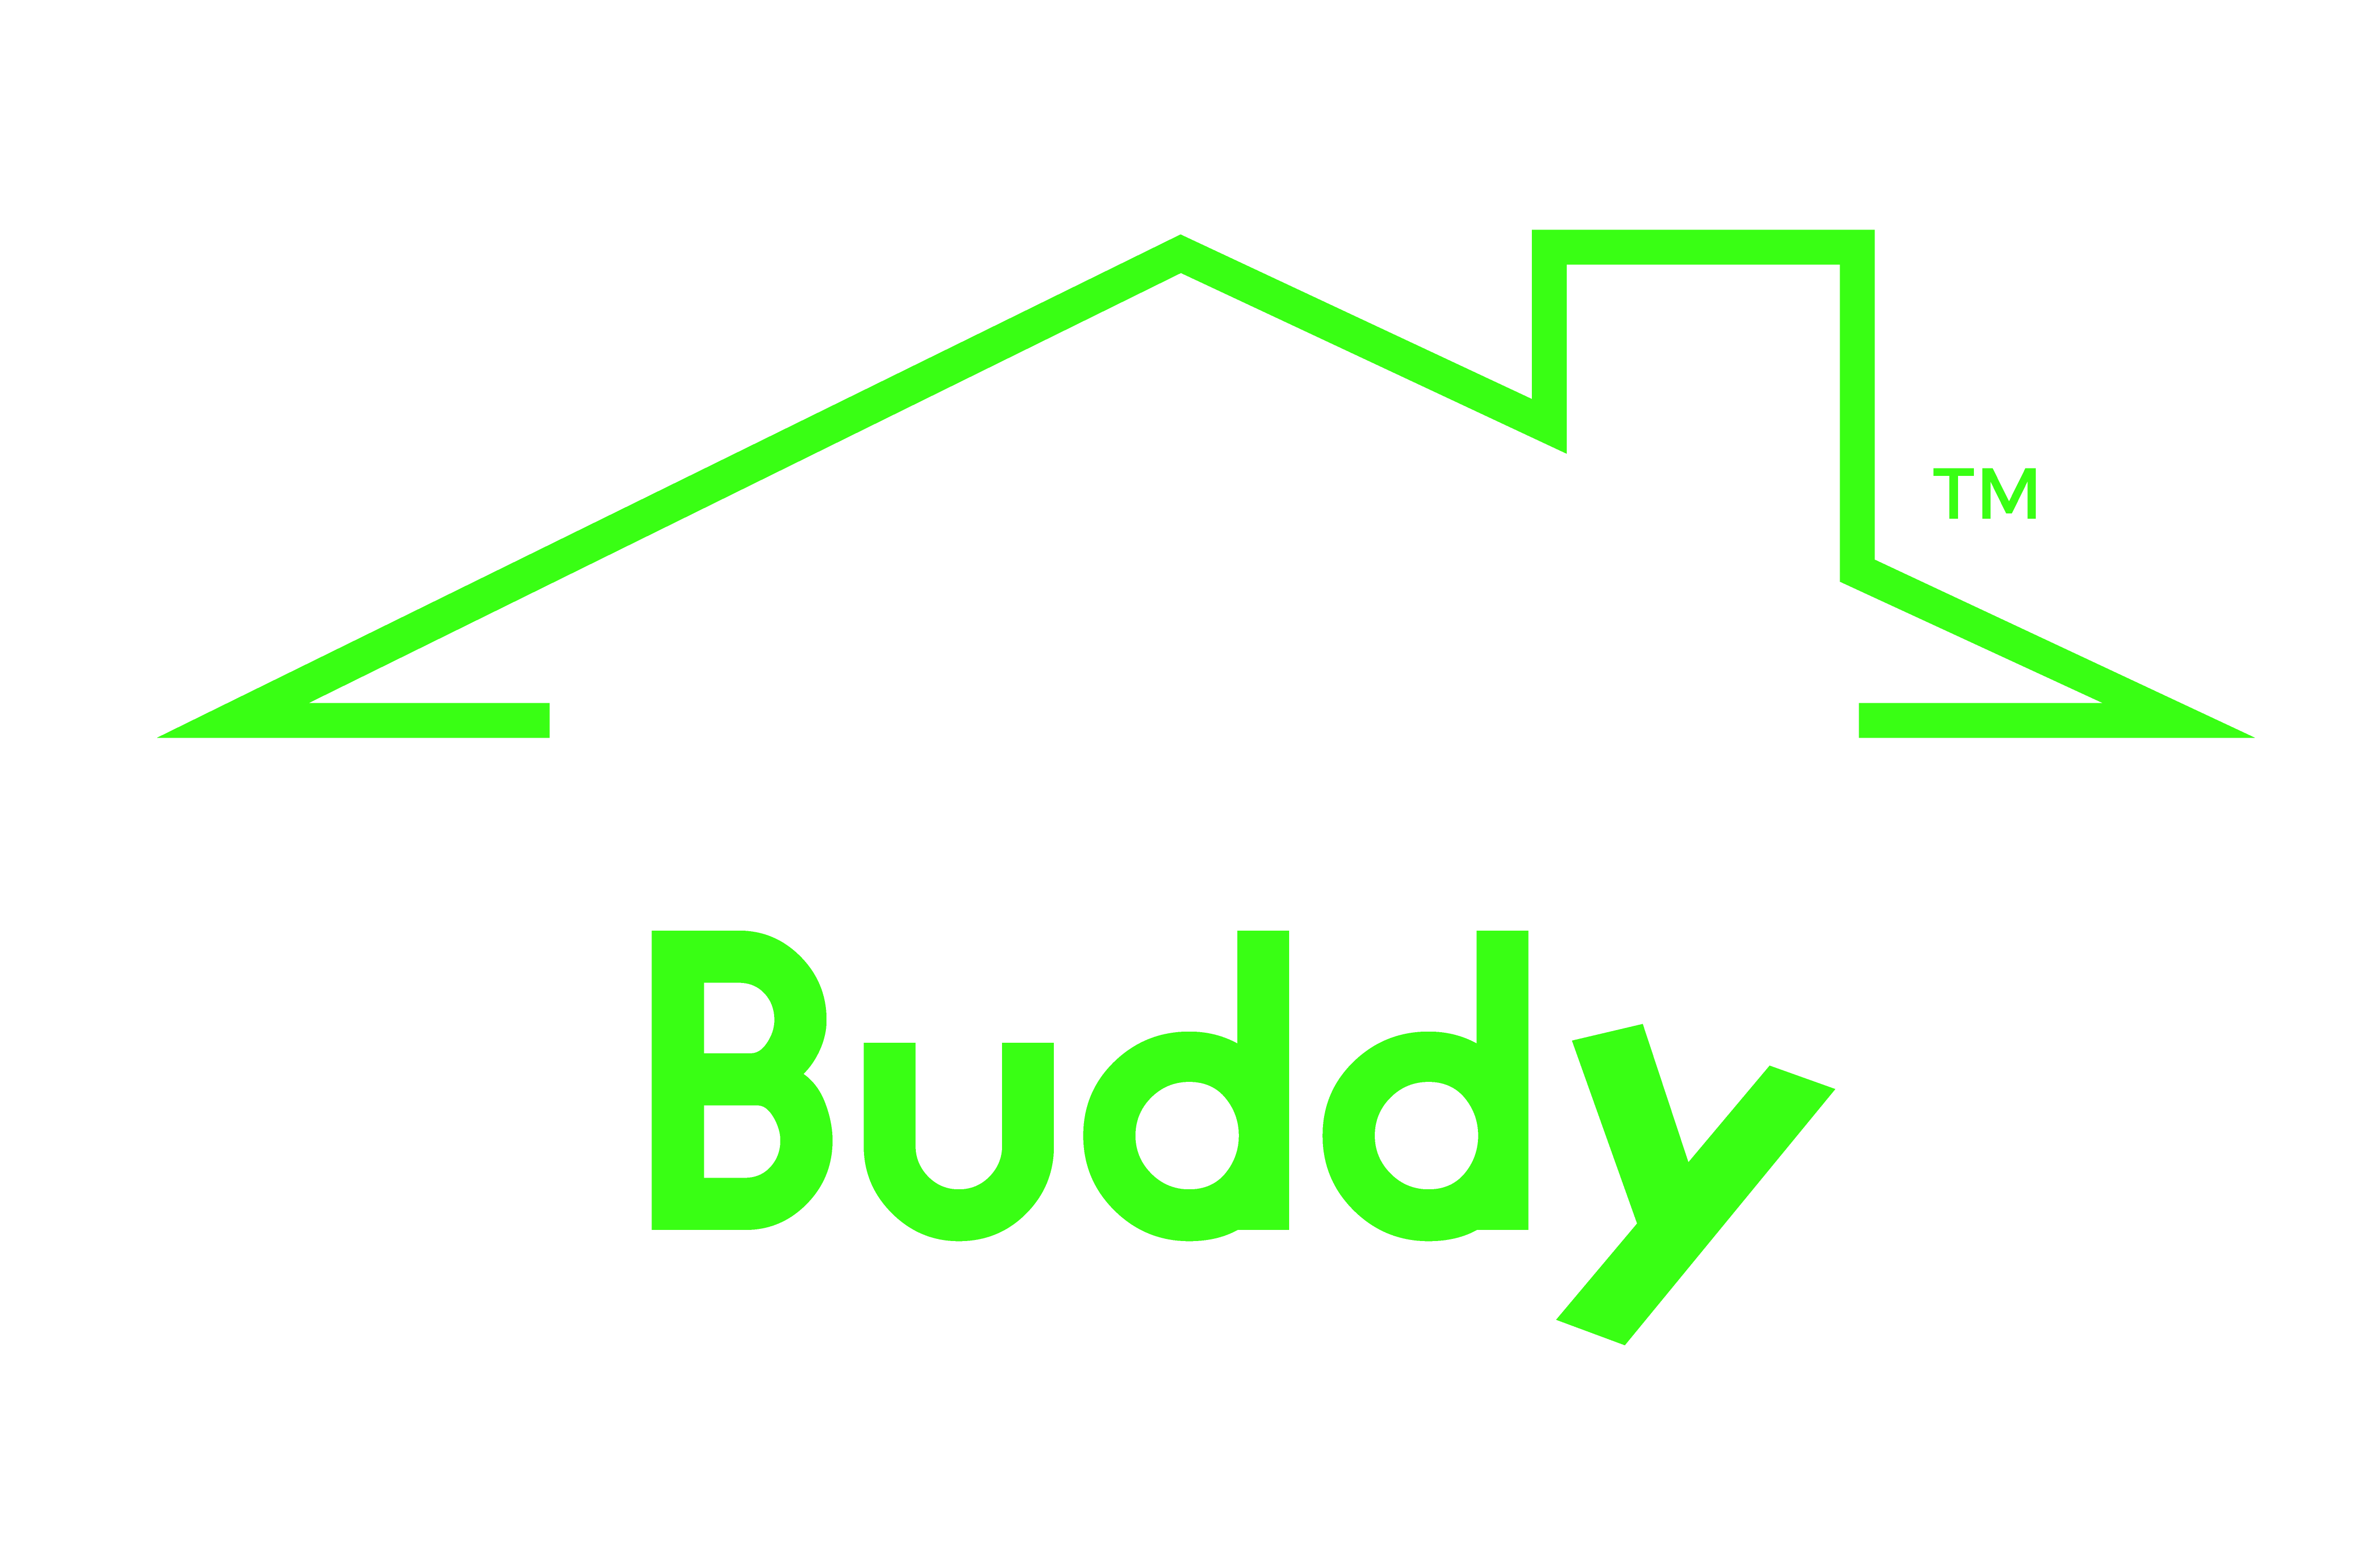 CrawlBuddy